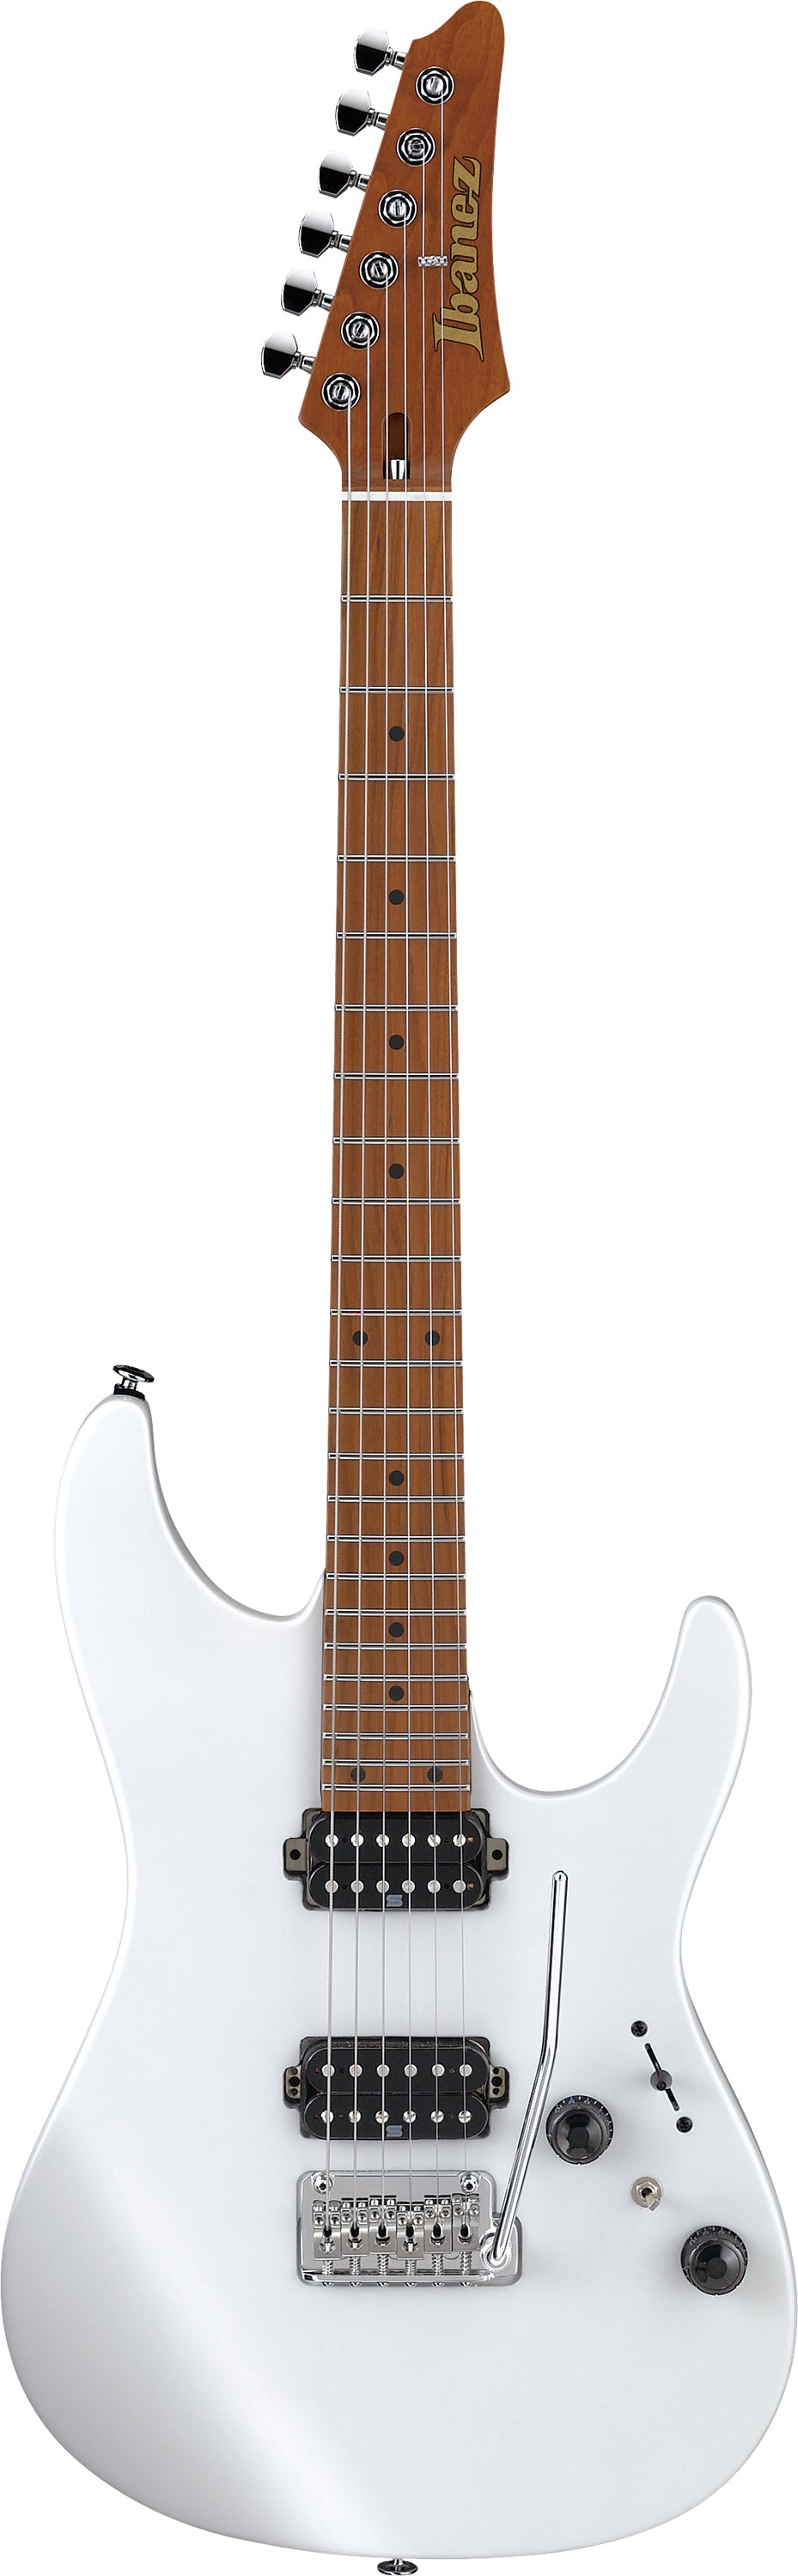 Ibanez AZ Prestige Series AZ2402PWF (Pearl White Flat) Japan made Electric Guitar 電結他